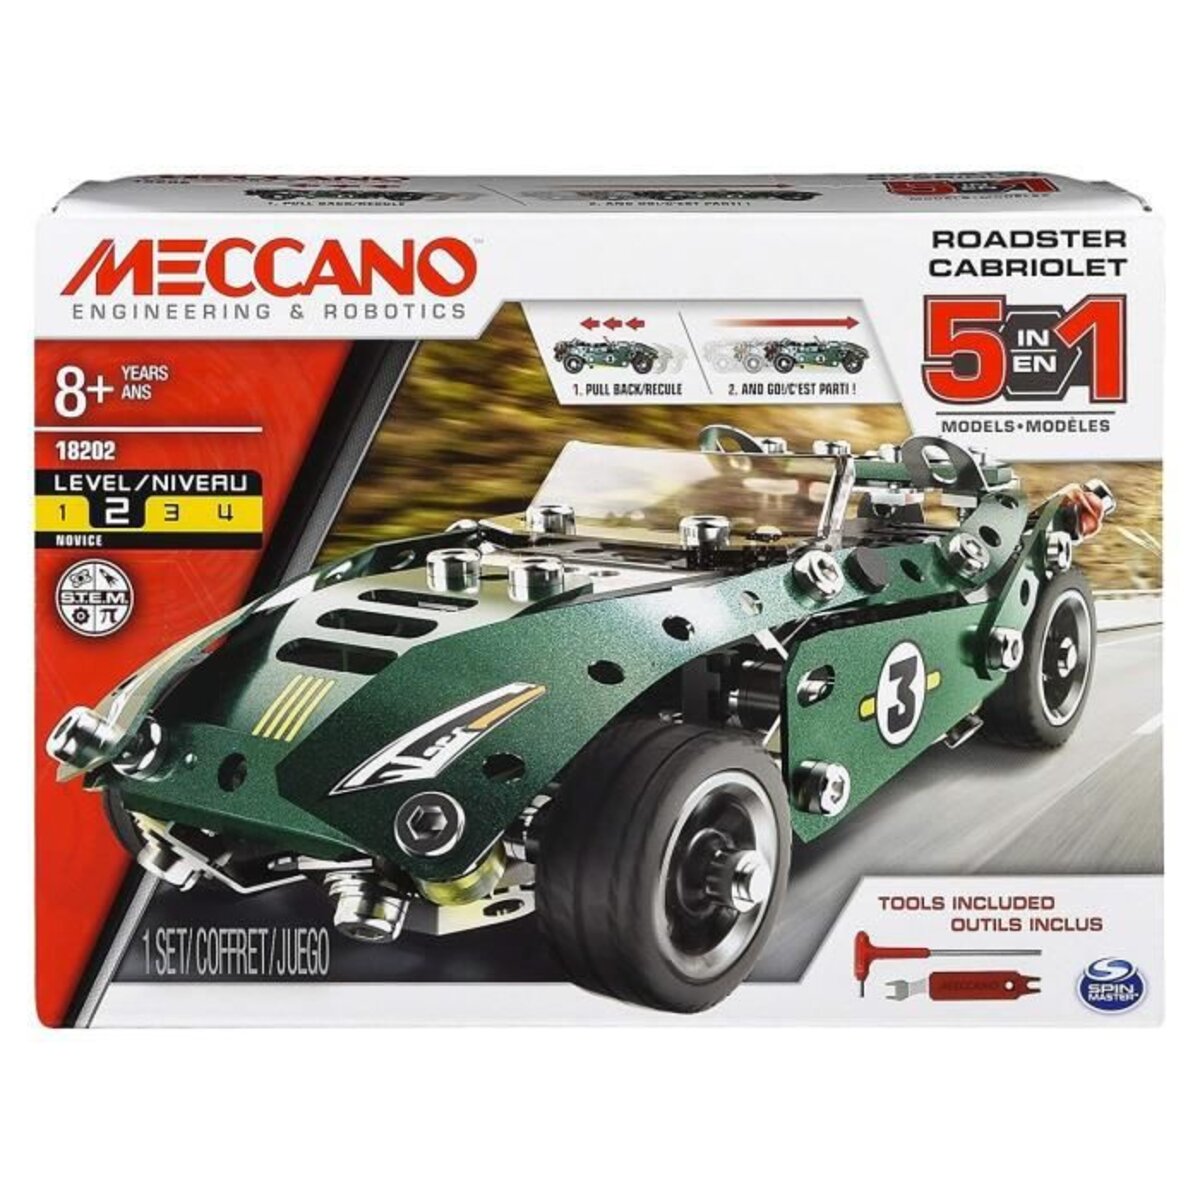 Meccano - le cabriolet 5 en 1 - rétro friction - jeu de